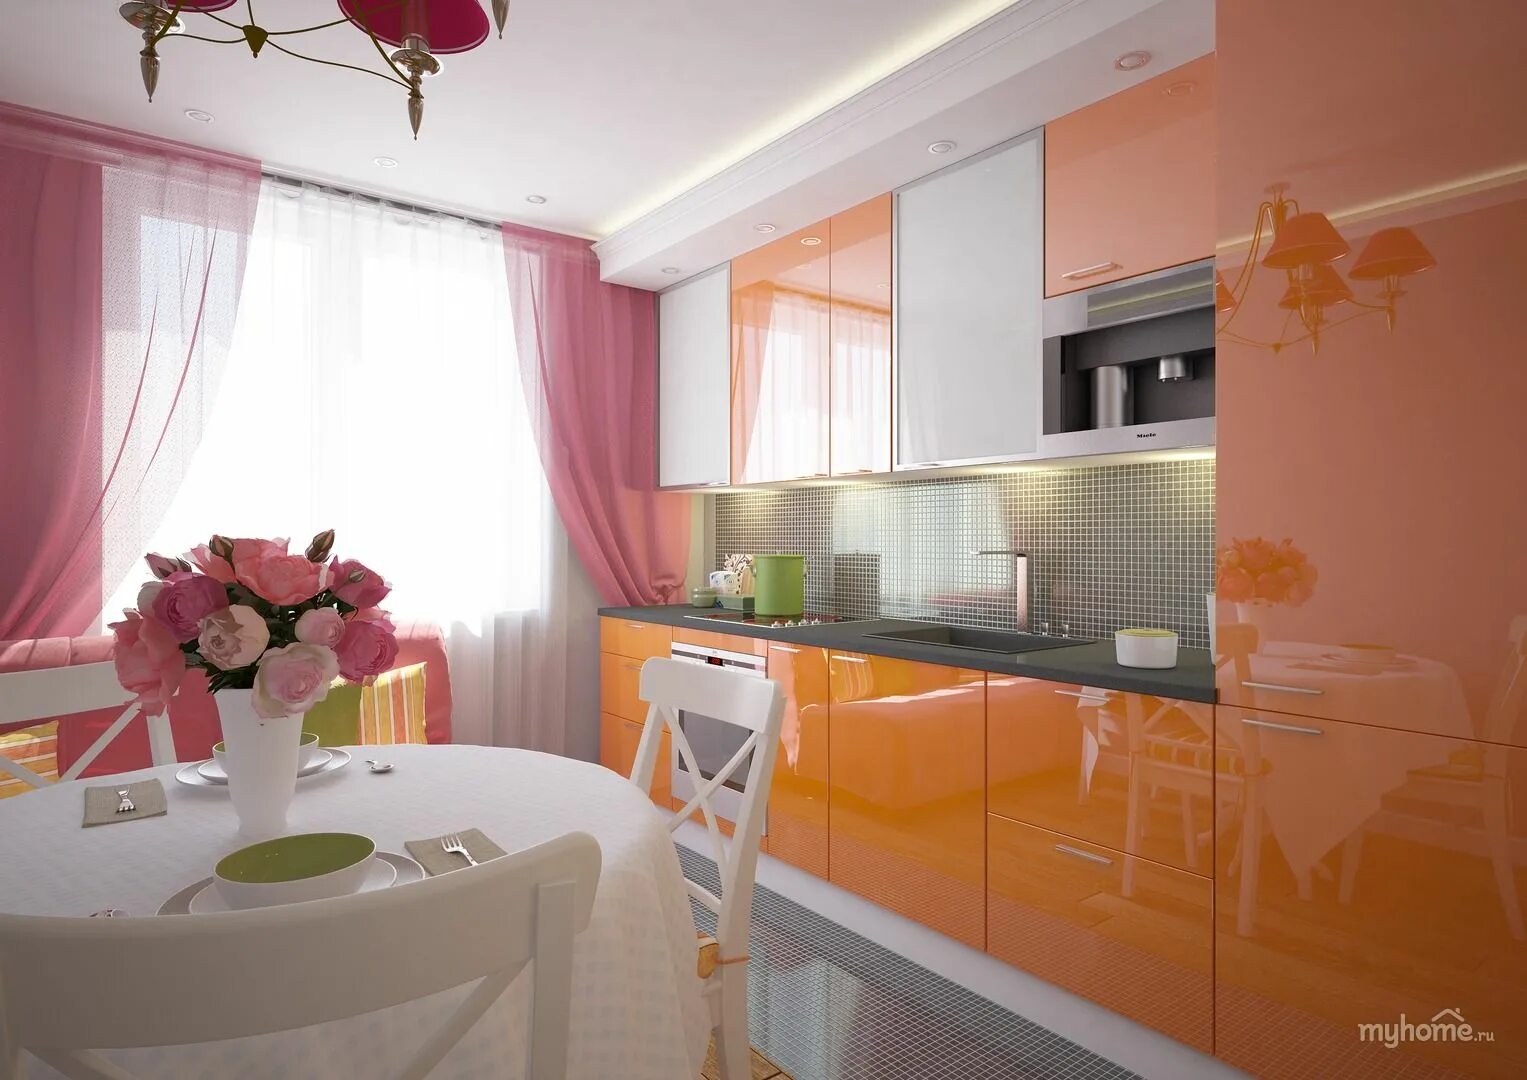 Кухня в персиковых тонах. Кухня в оранжевых тонах. Кухонный гарнитур персикового цвета. Оранжевая кухня в интерьере.